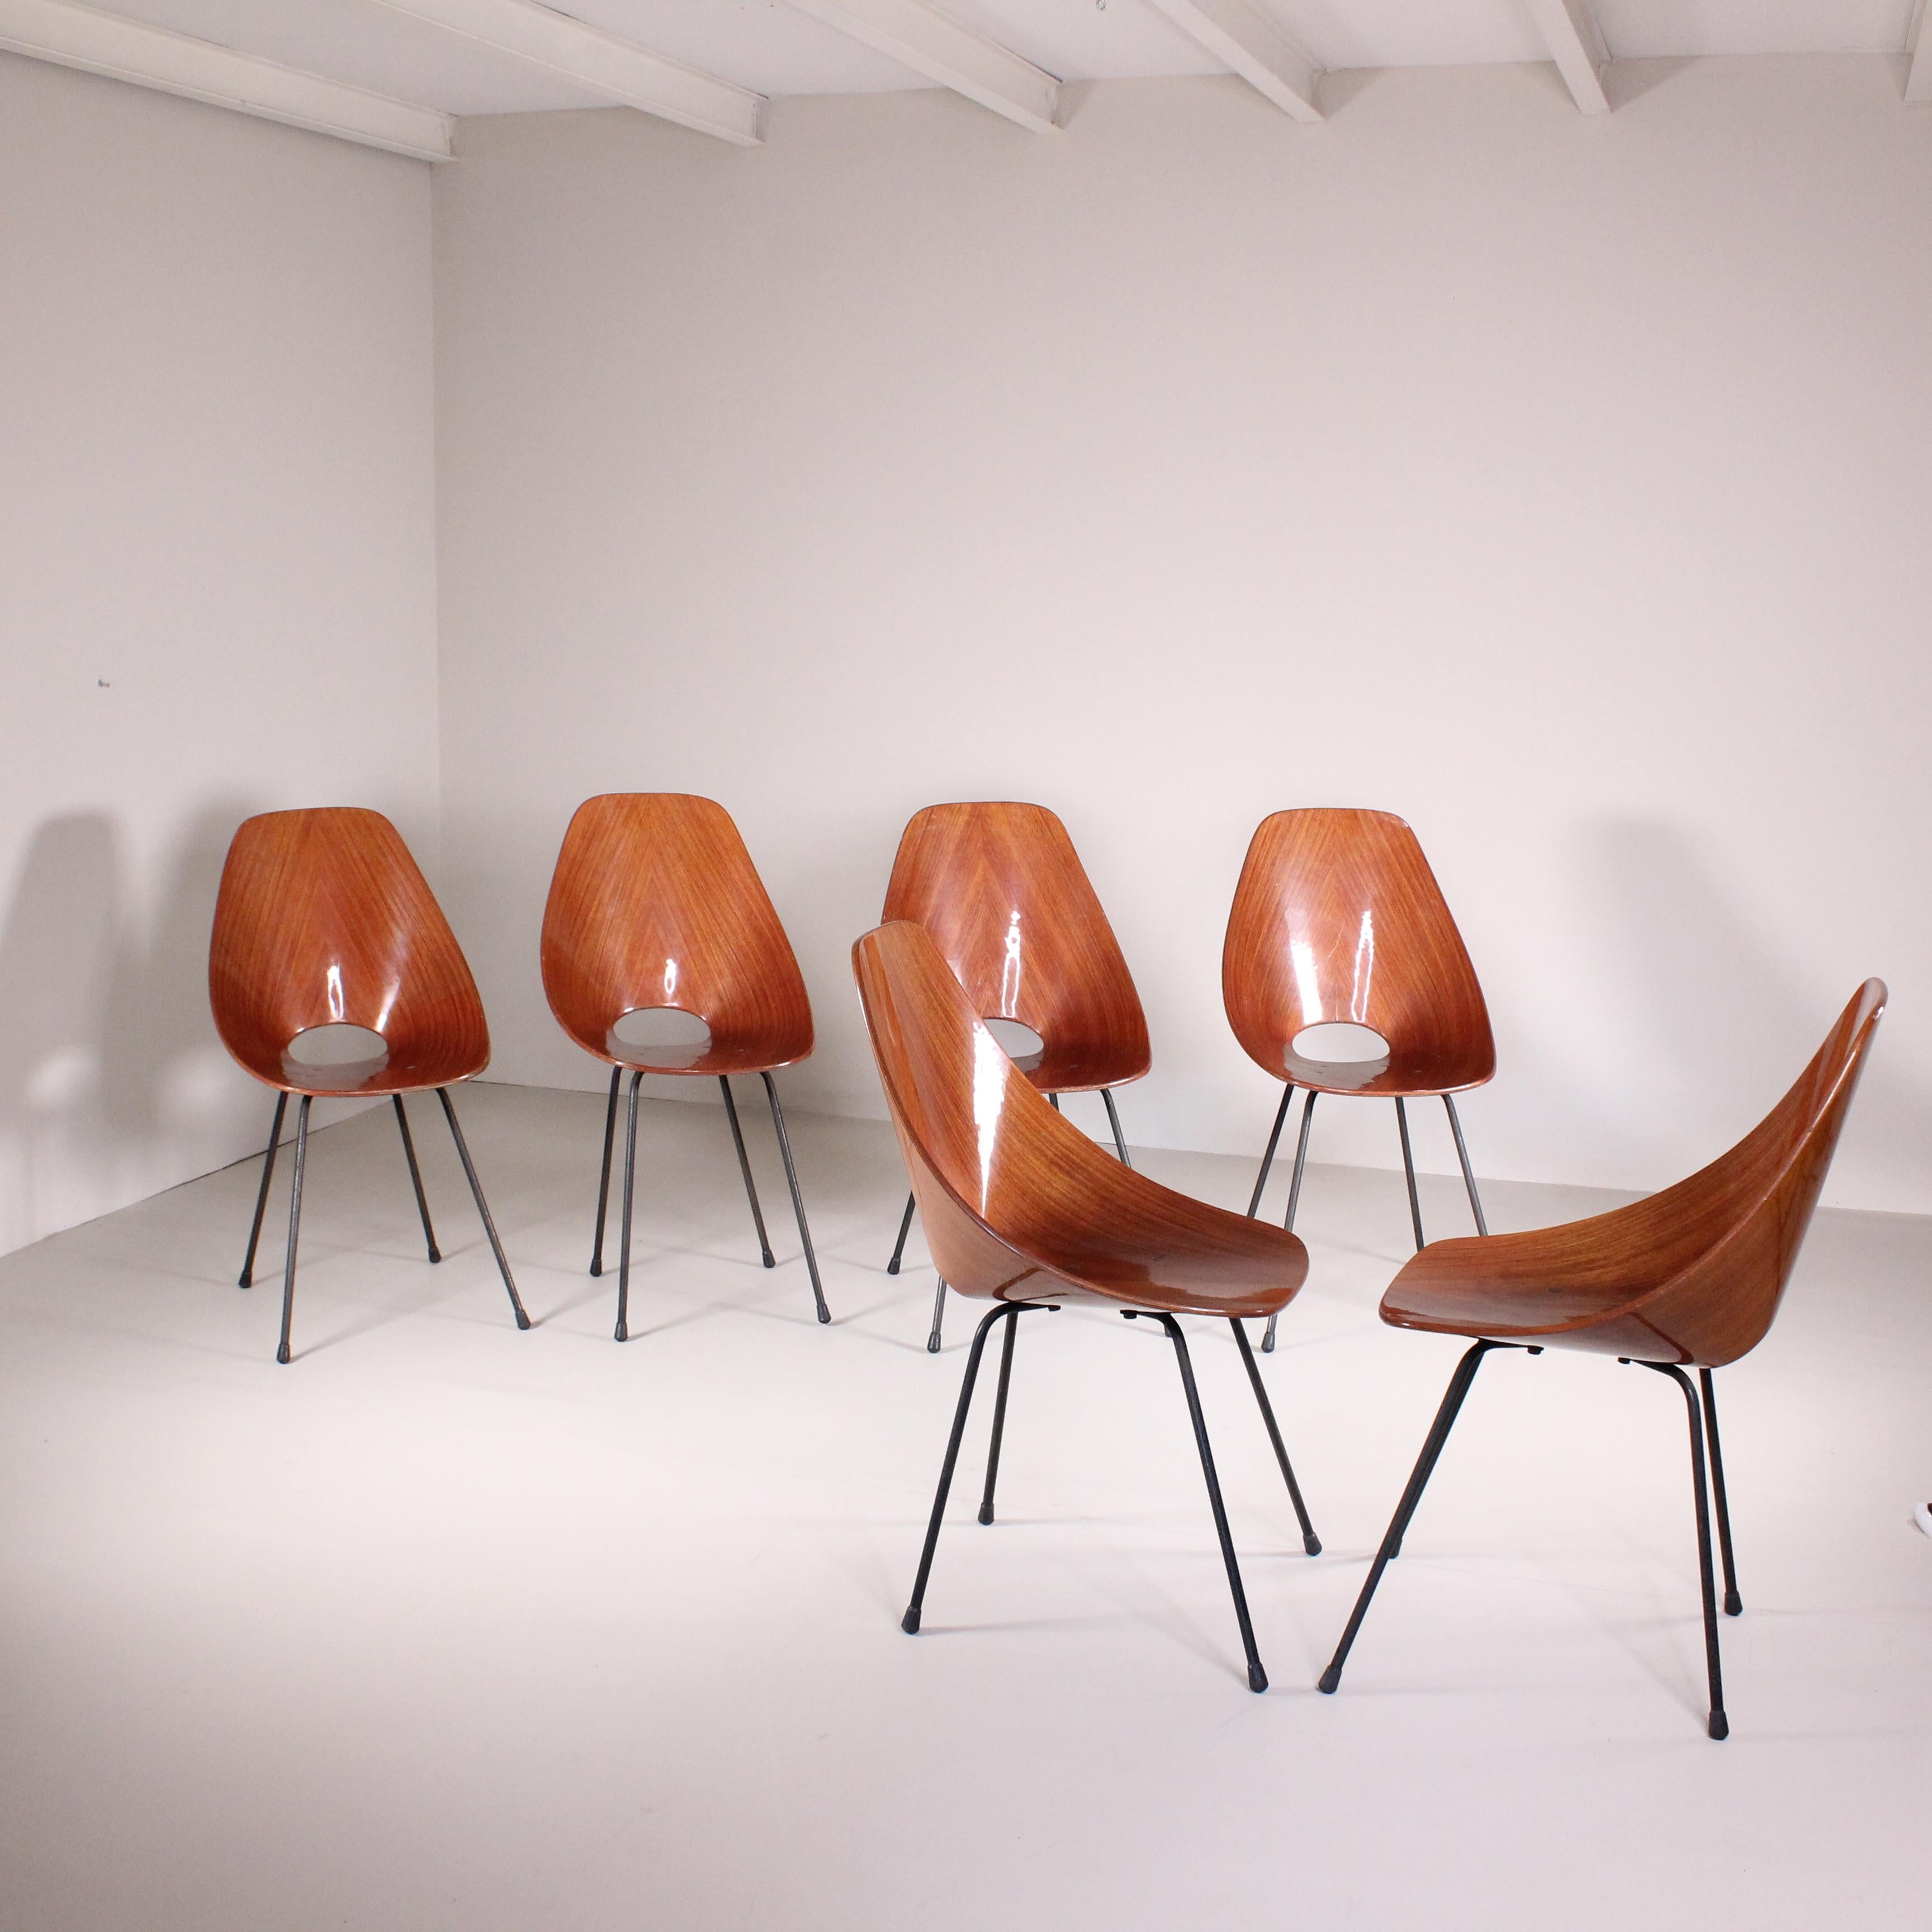 Le sedie Medea, progettate da Vittorio Nobili per Fratelli Tagliabue negli anni ’60, sono un’icona del design italiano del XX secolo. Caratterizzate da una silhouette slanciata e elegante, queste sedie sono state innovative per l’uso pionieristico